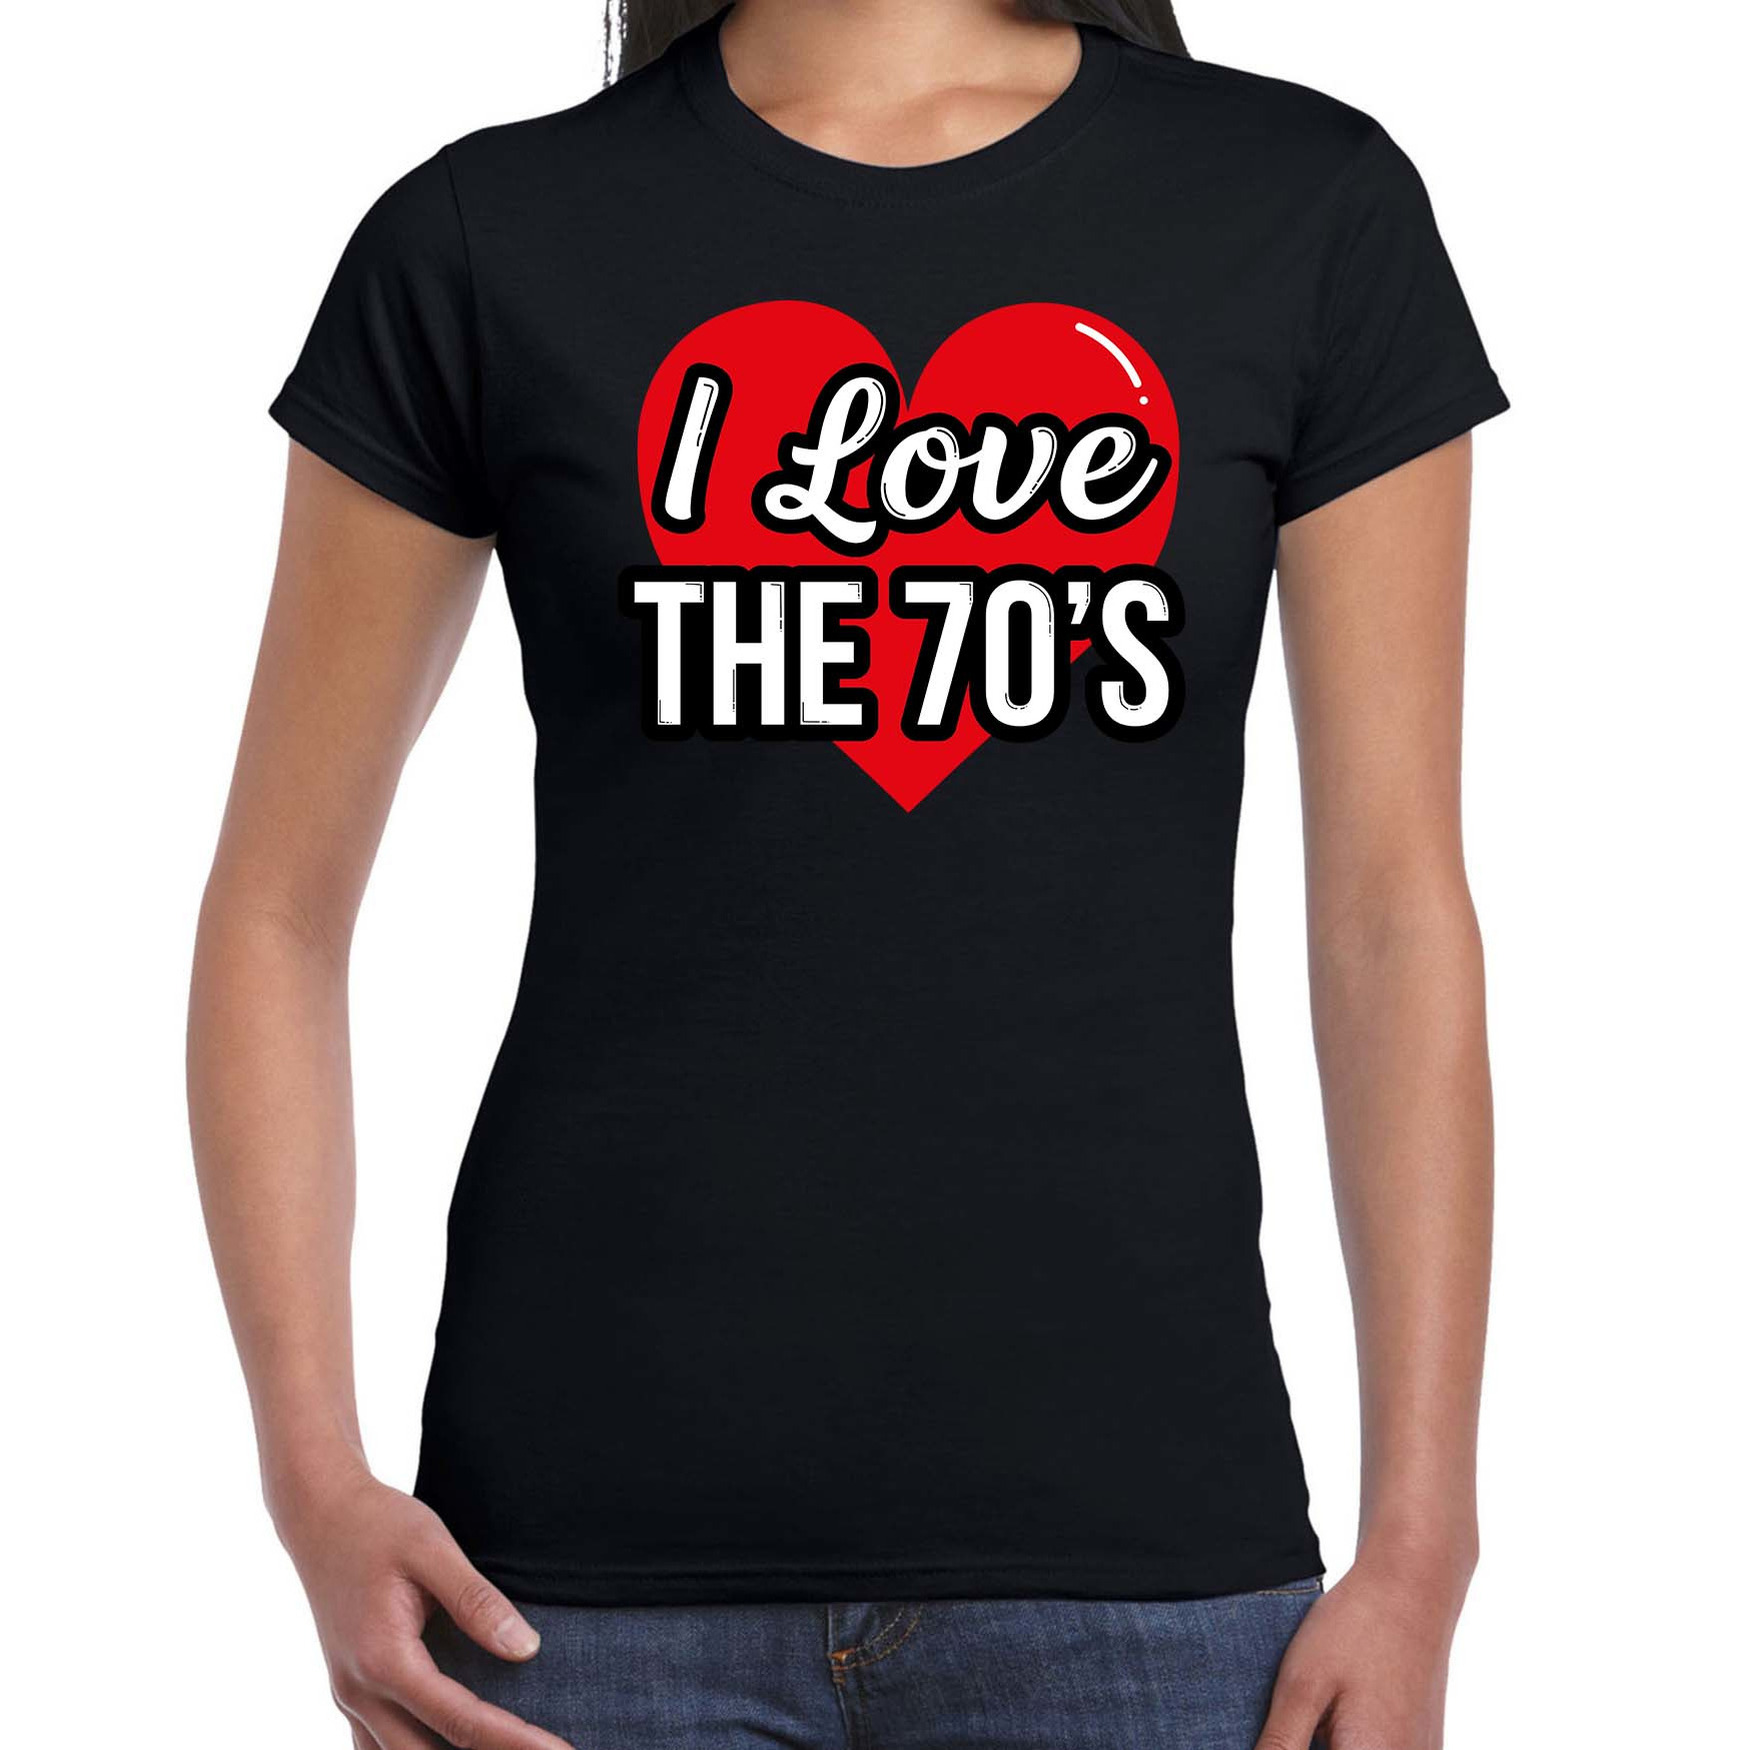 I love 70s verkleed t-shirt zwart voor dames 70s party verkleed outfit